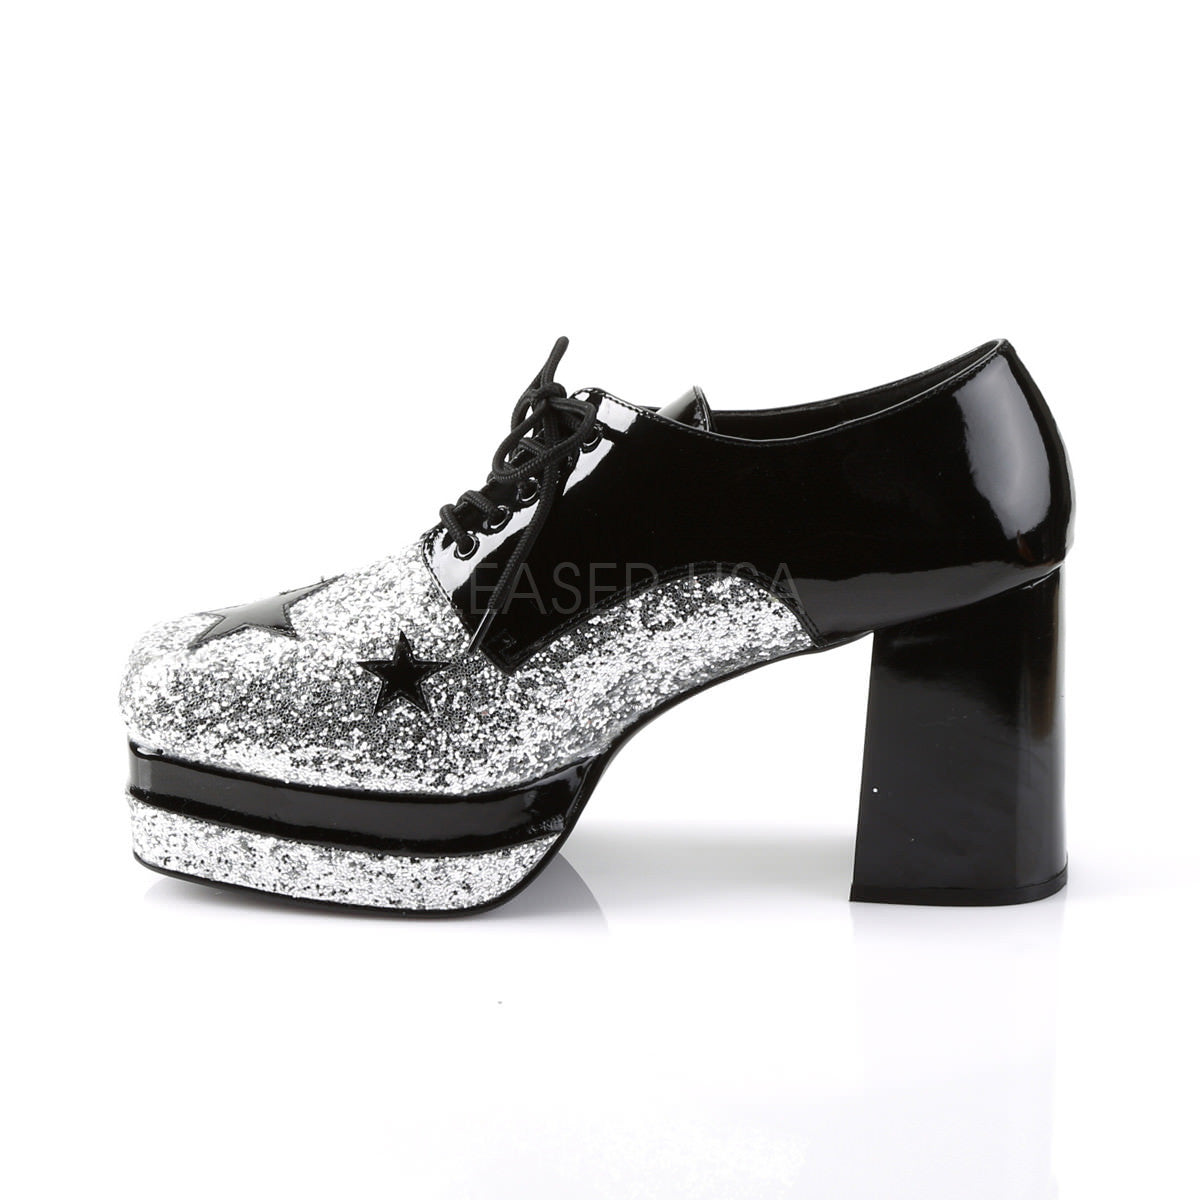 GLAMROCK-02 Silver Platform Shoes